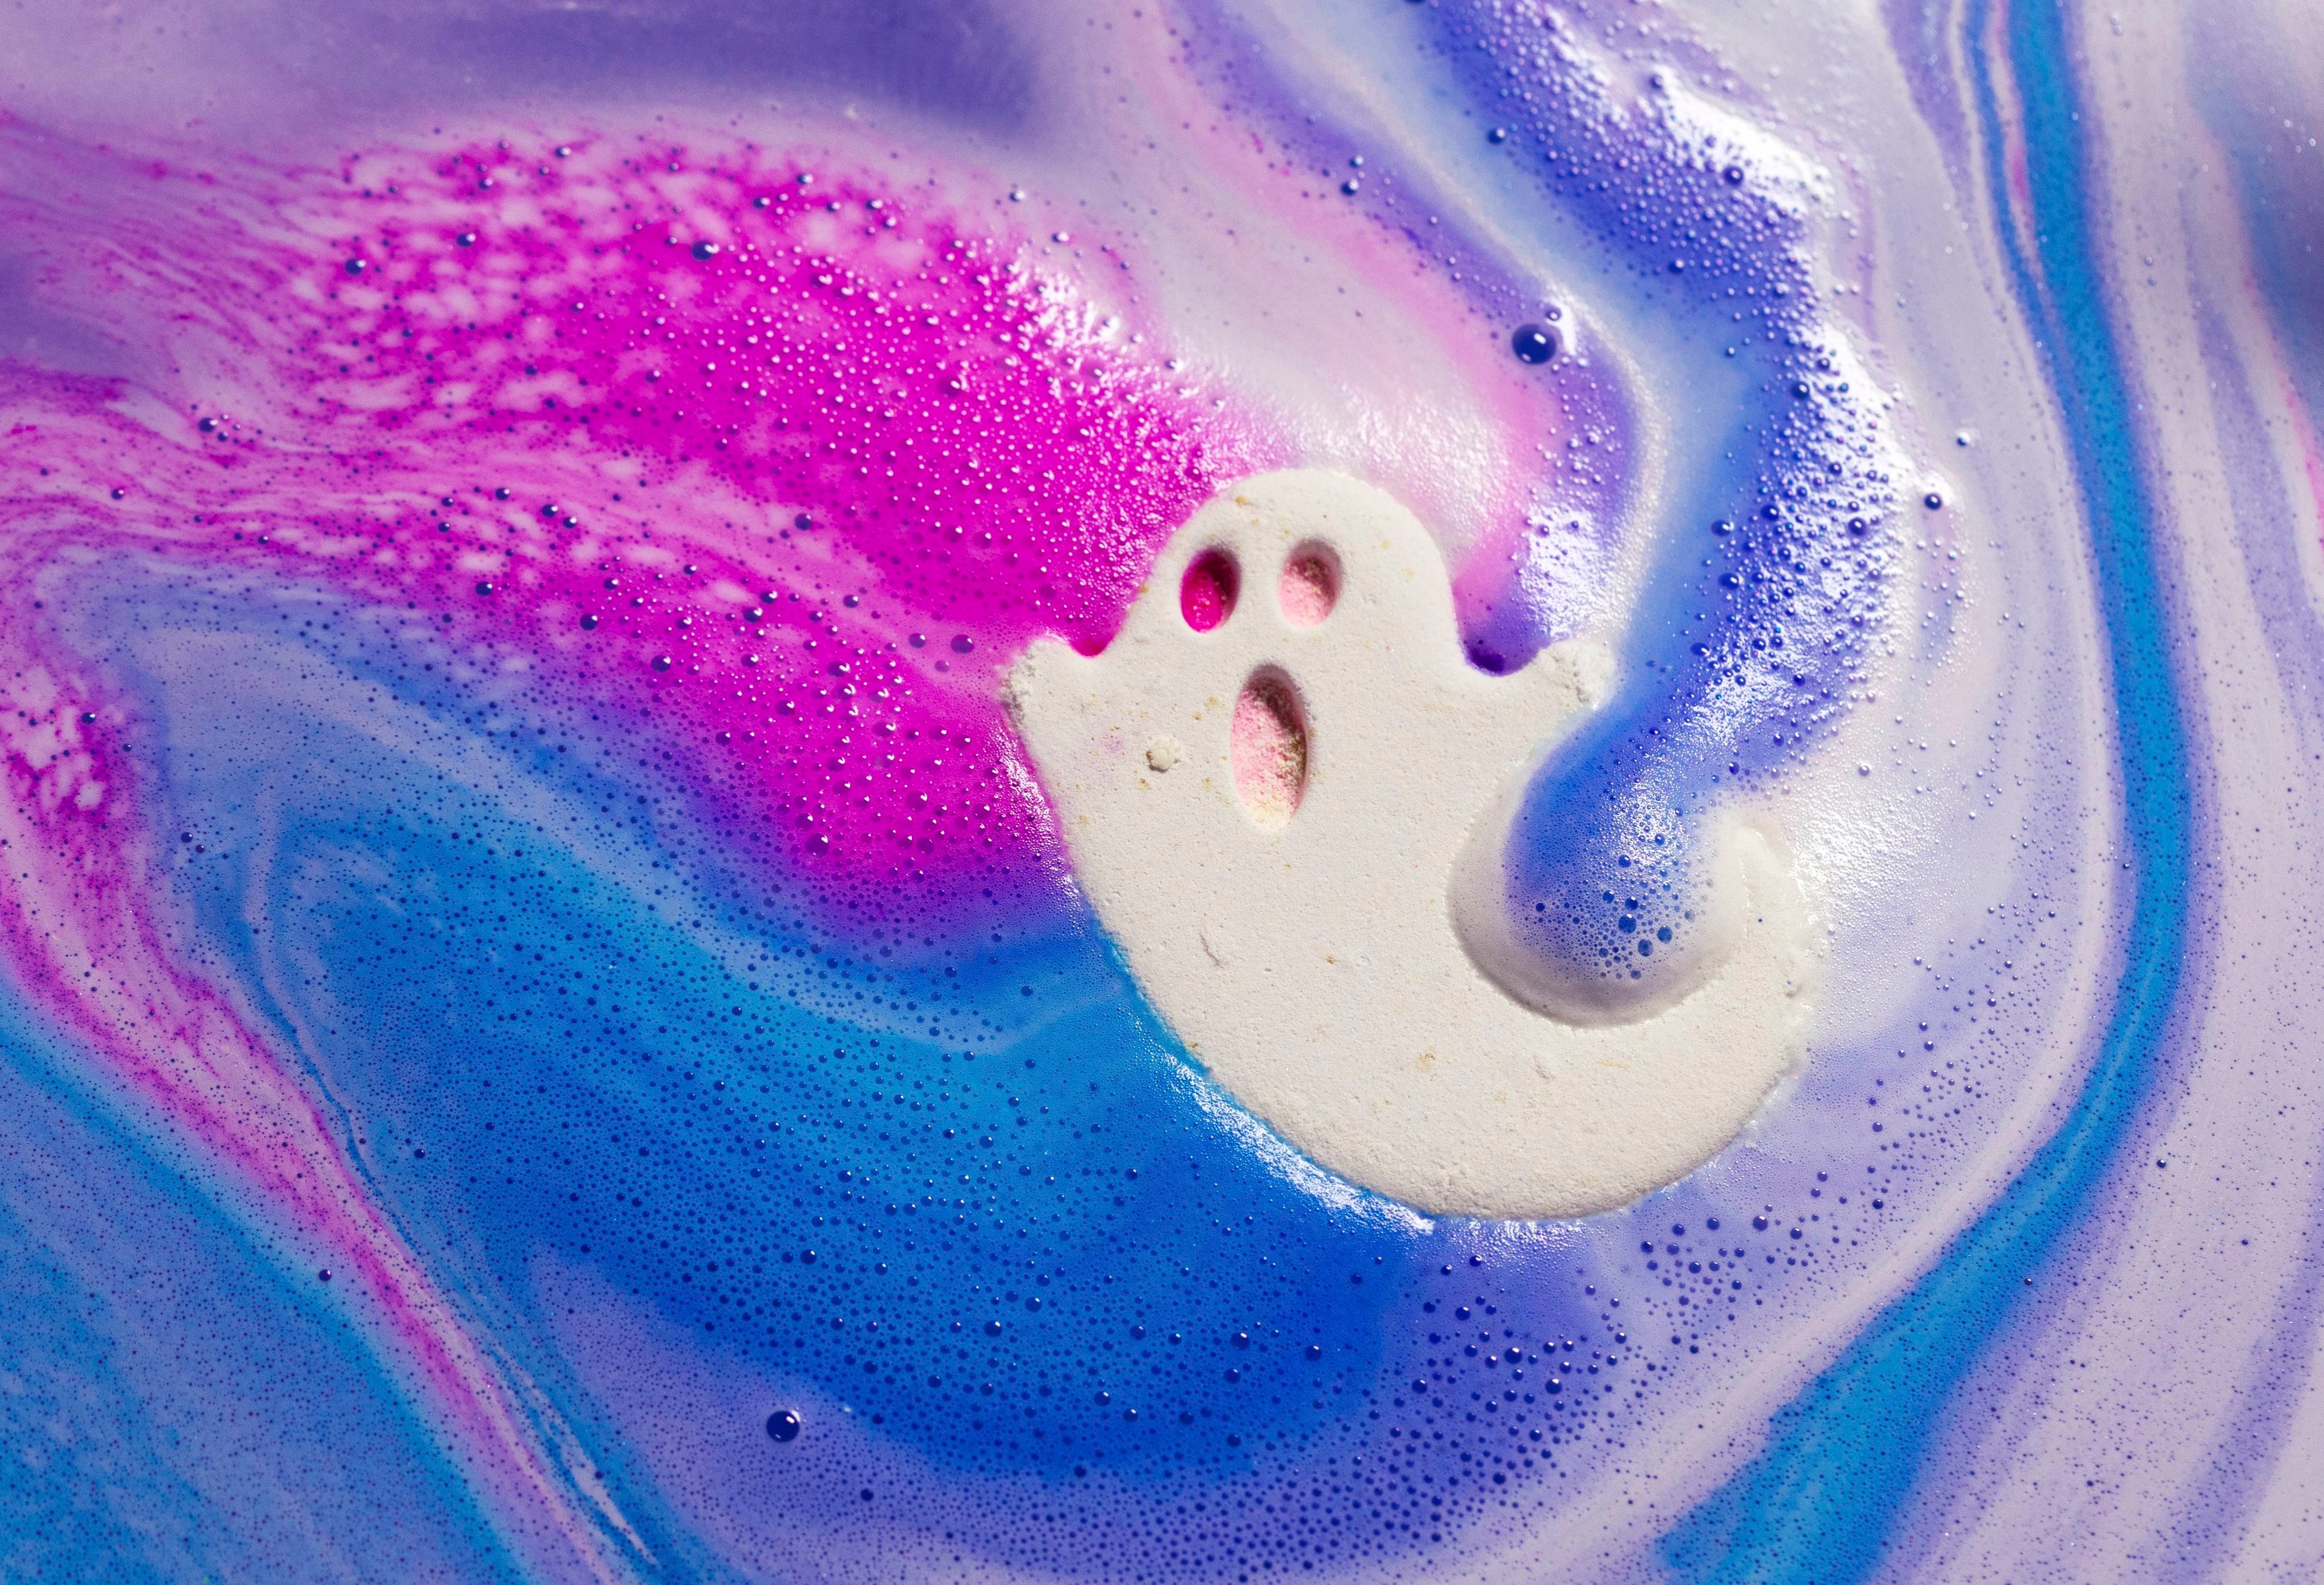 Ghostie bath bomb slowly fizzes away revealing a layer of foamy swirls of pink, purple and blue.